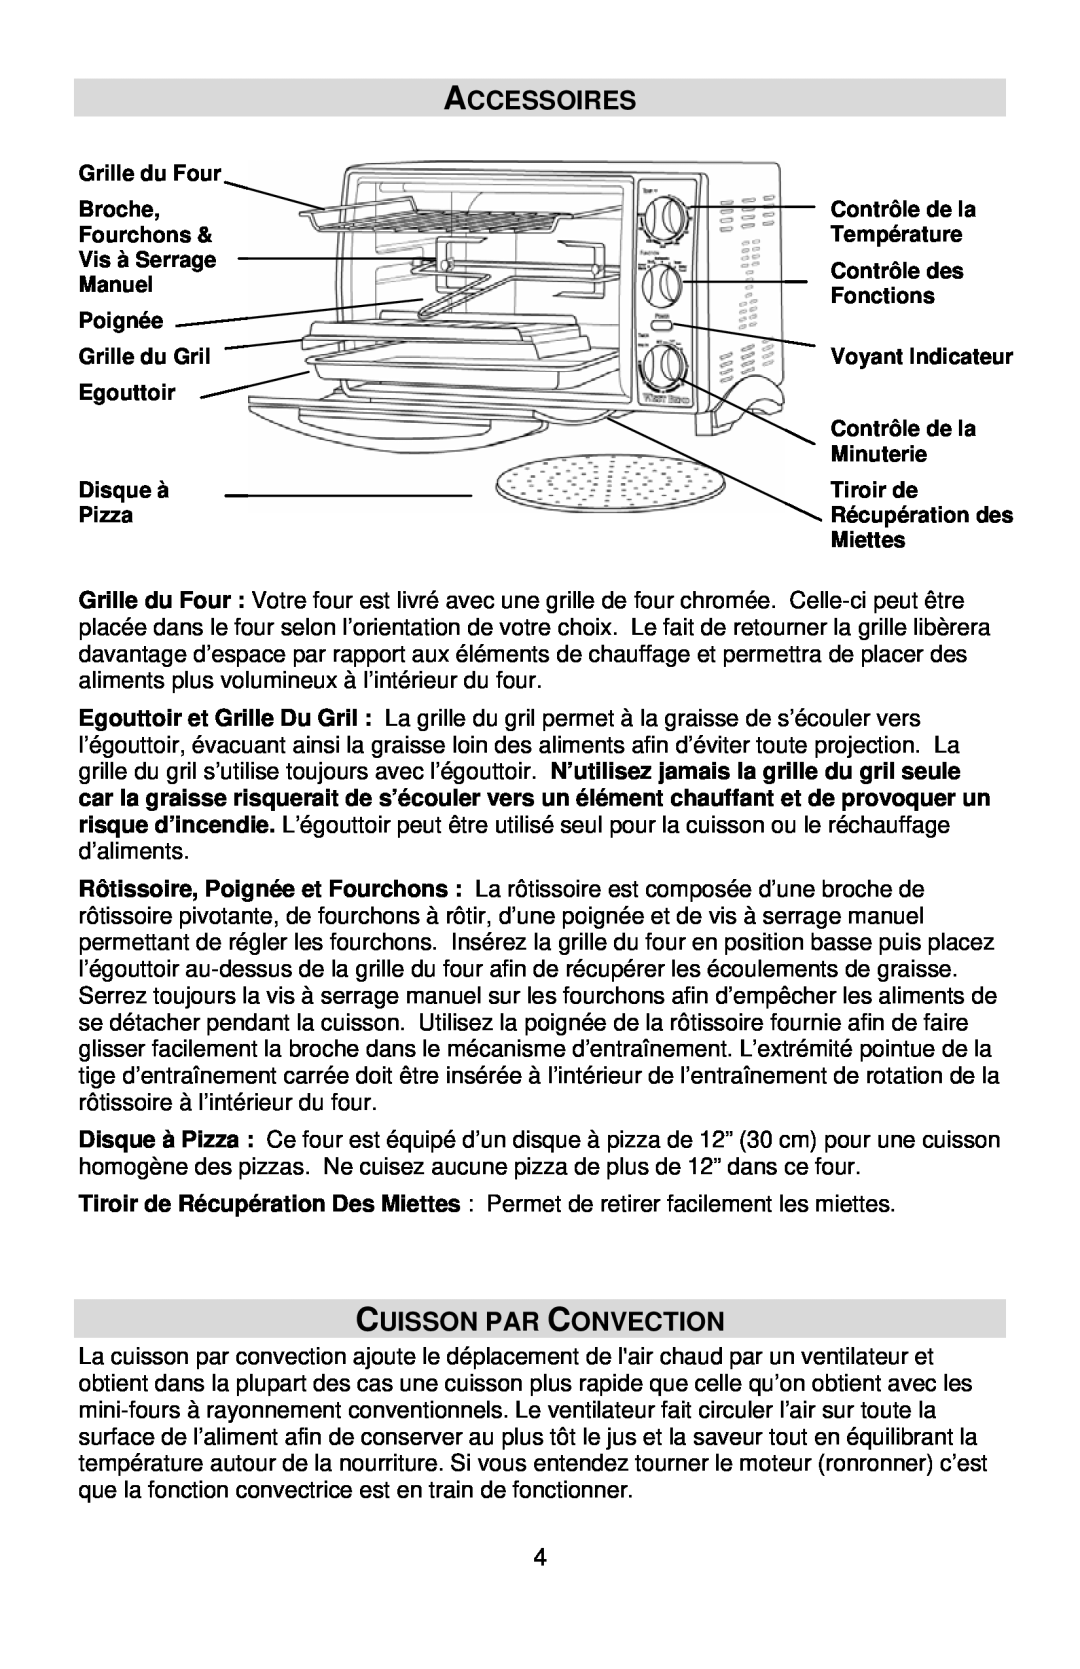 West Bend L5658B instruction manual Accessoires, Cuisson Par Convection 